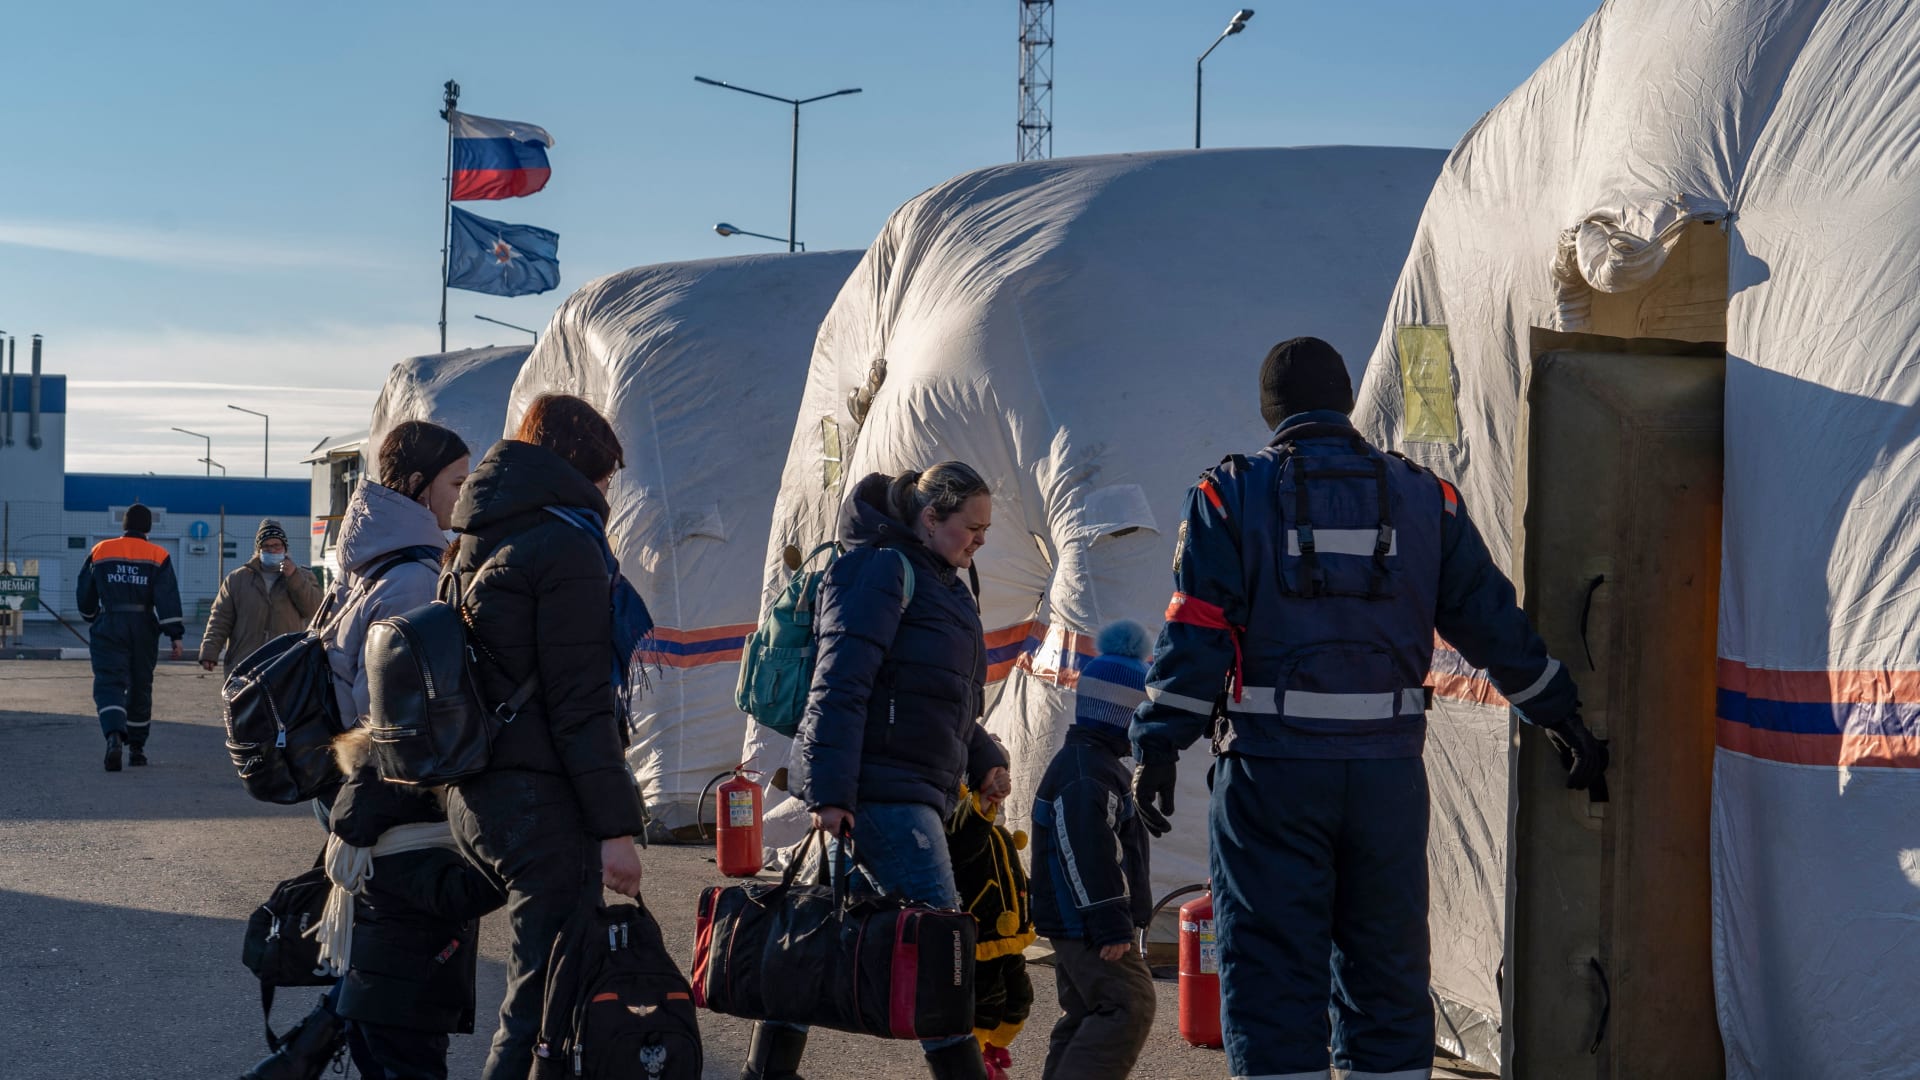 أشخاص تم إجلاؤهم من "جمهورية دونيتسك" الانفصالية يدخلون خيمة في معسكر تابع لوزارة الطوارئ الروسية